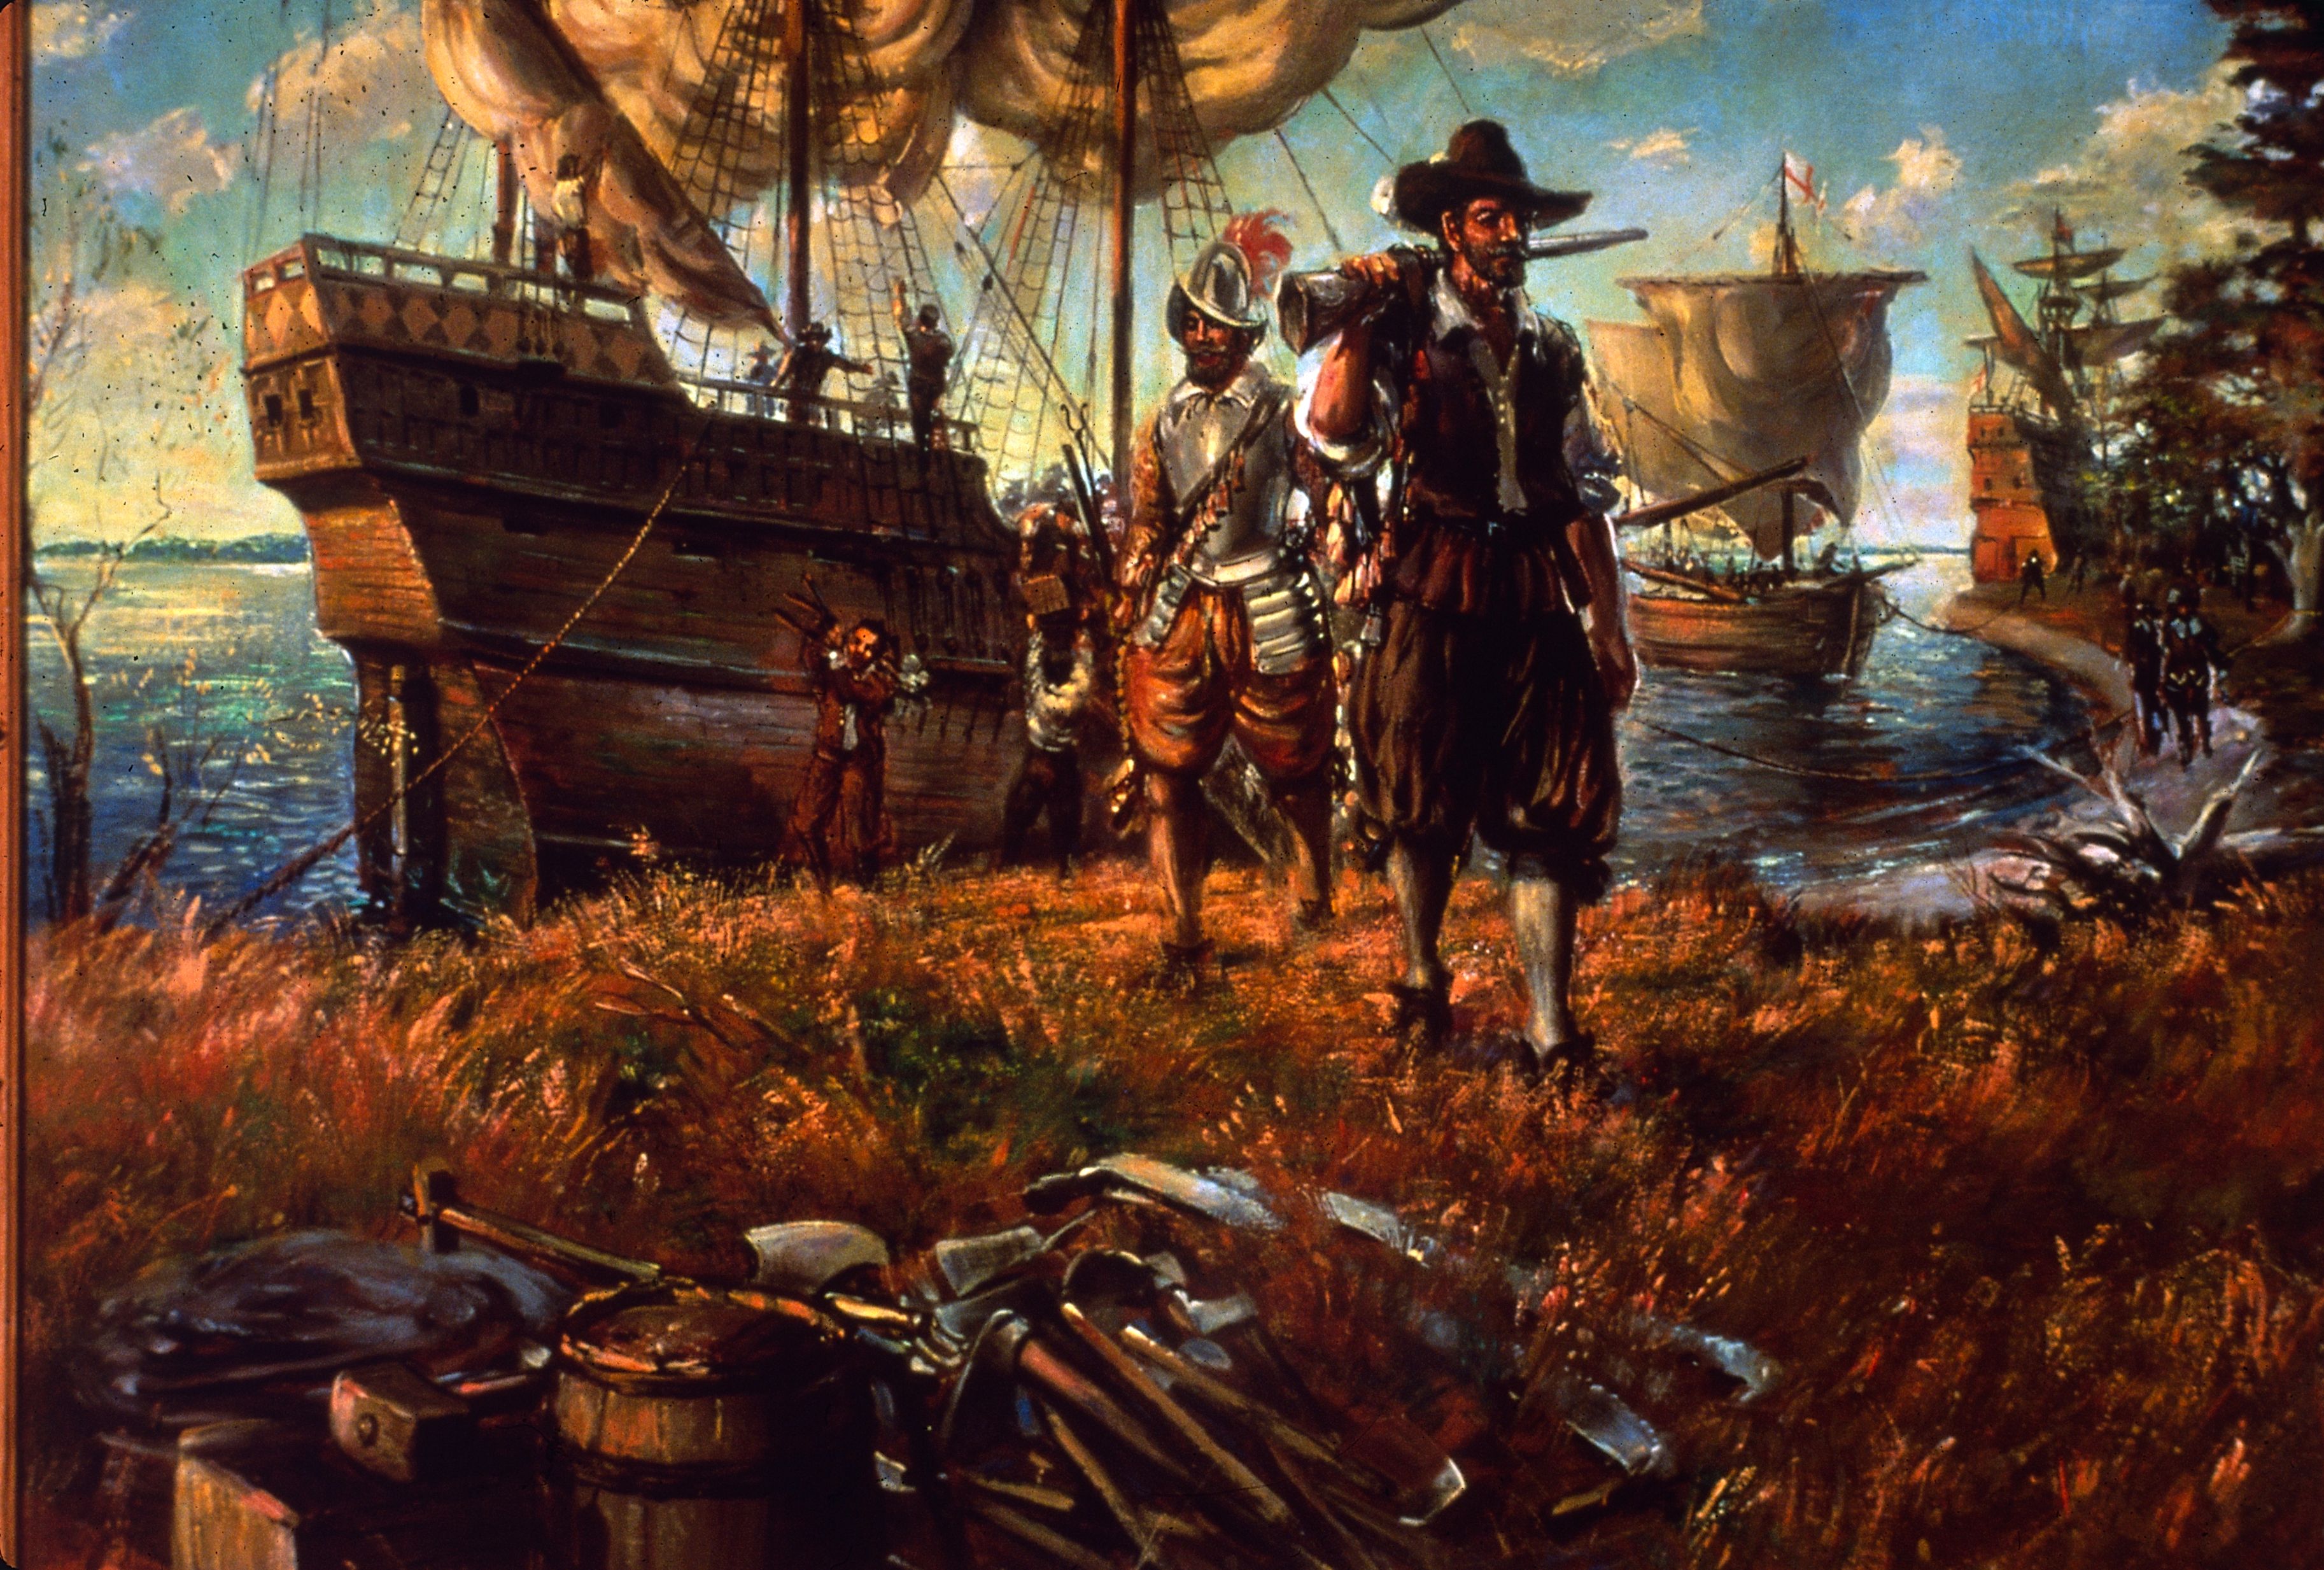 The ship arrived. Джеймстаун США 1607. Колонисты Америки 17 век. Колонизация Америки англичанами (1607—1775). Первые Колонисты в Северной Америке.